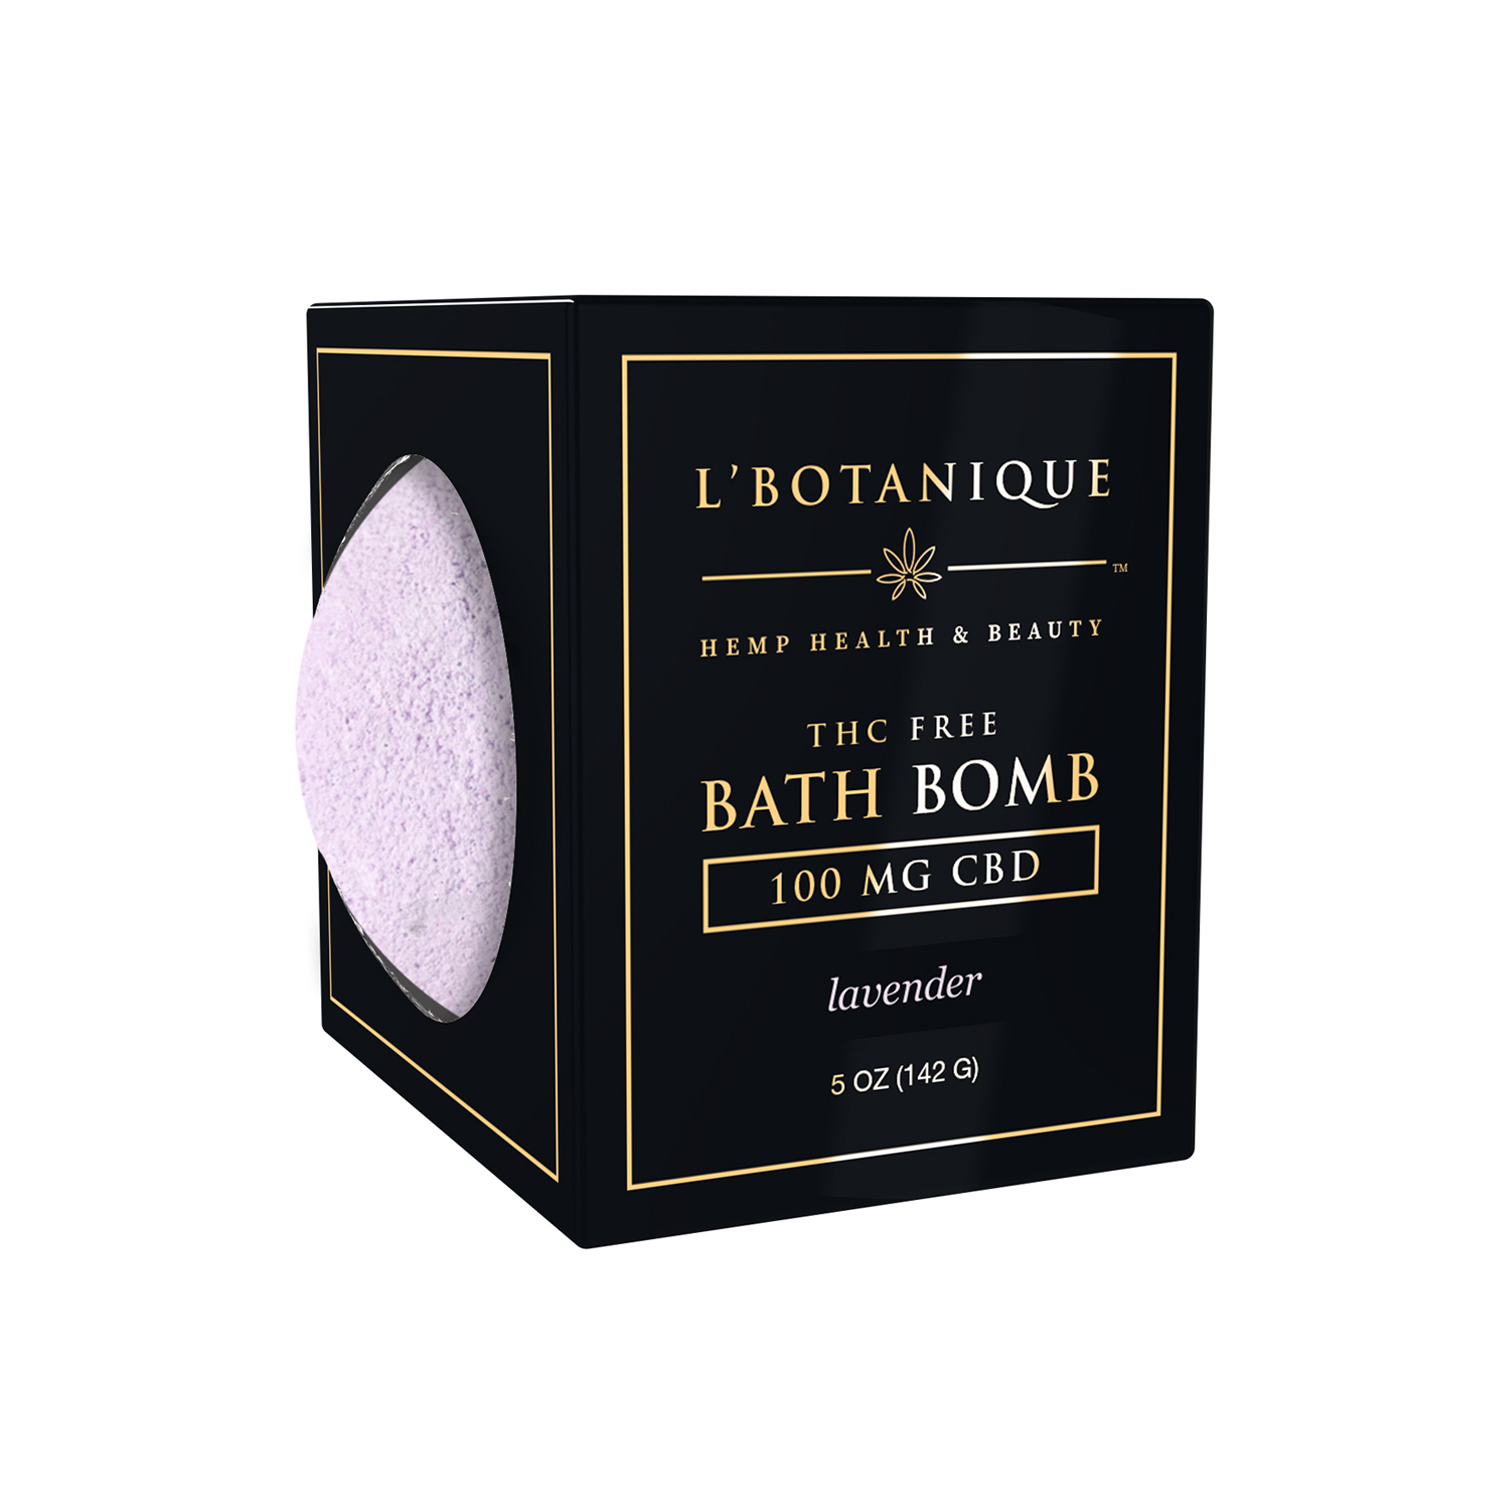 LBotanique-Bath-Bomb-Lavender